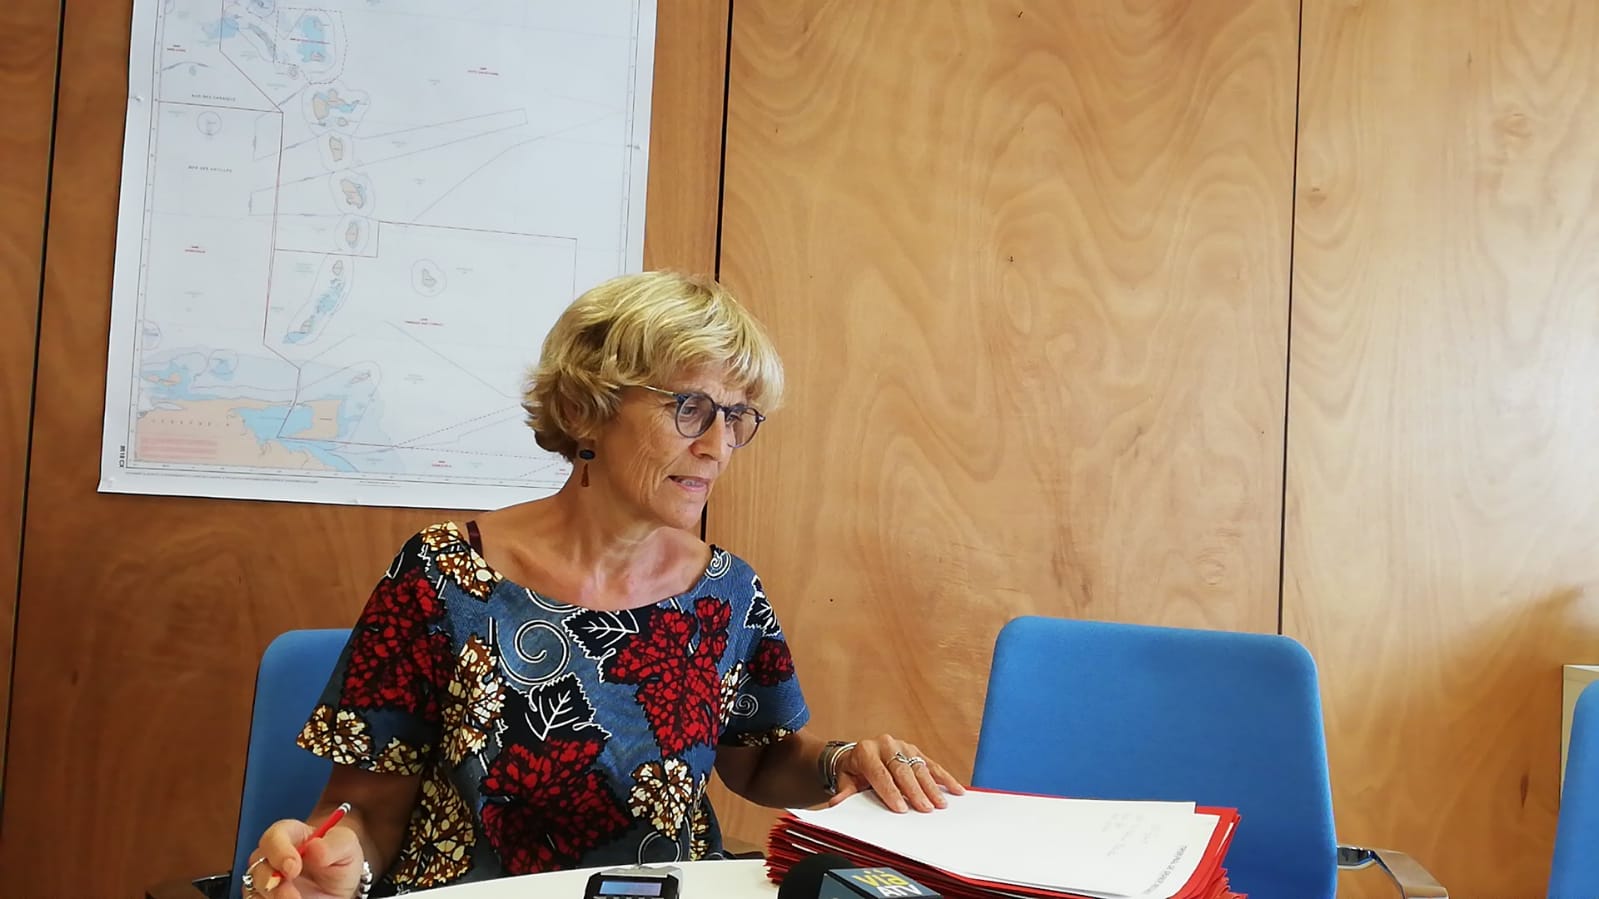     Clarisse Taron, procureure de la République : "Une enquête criminelle ouverte tous les deux jours"

